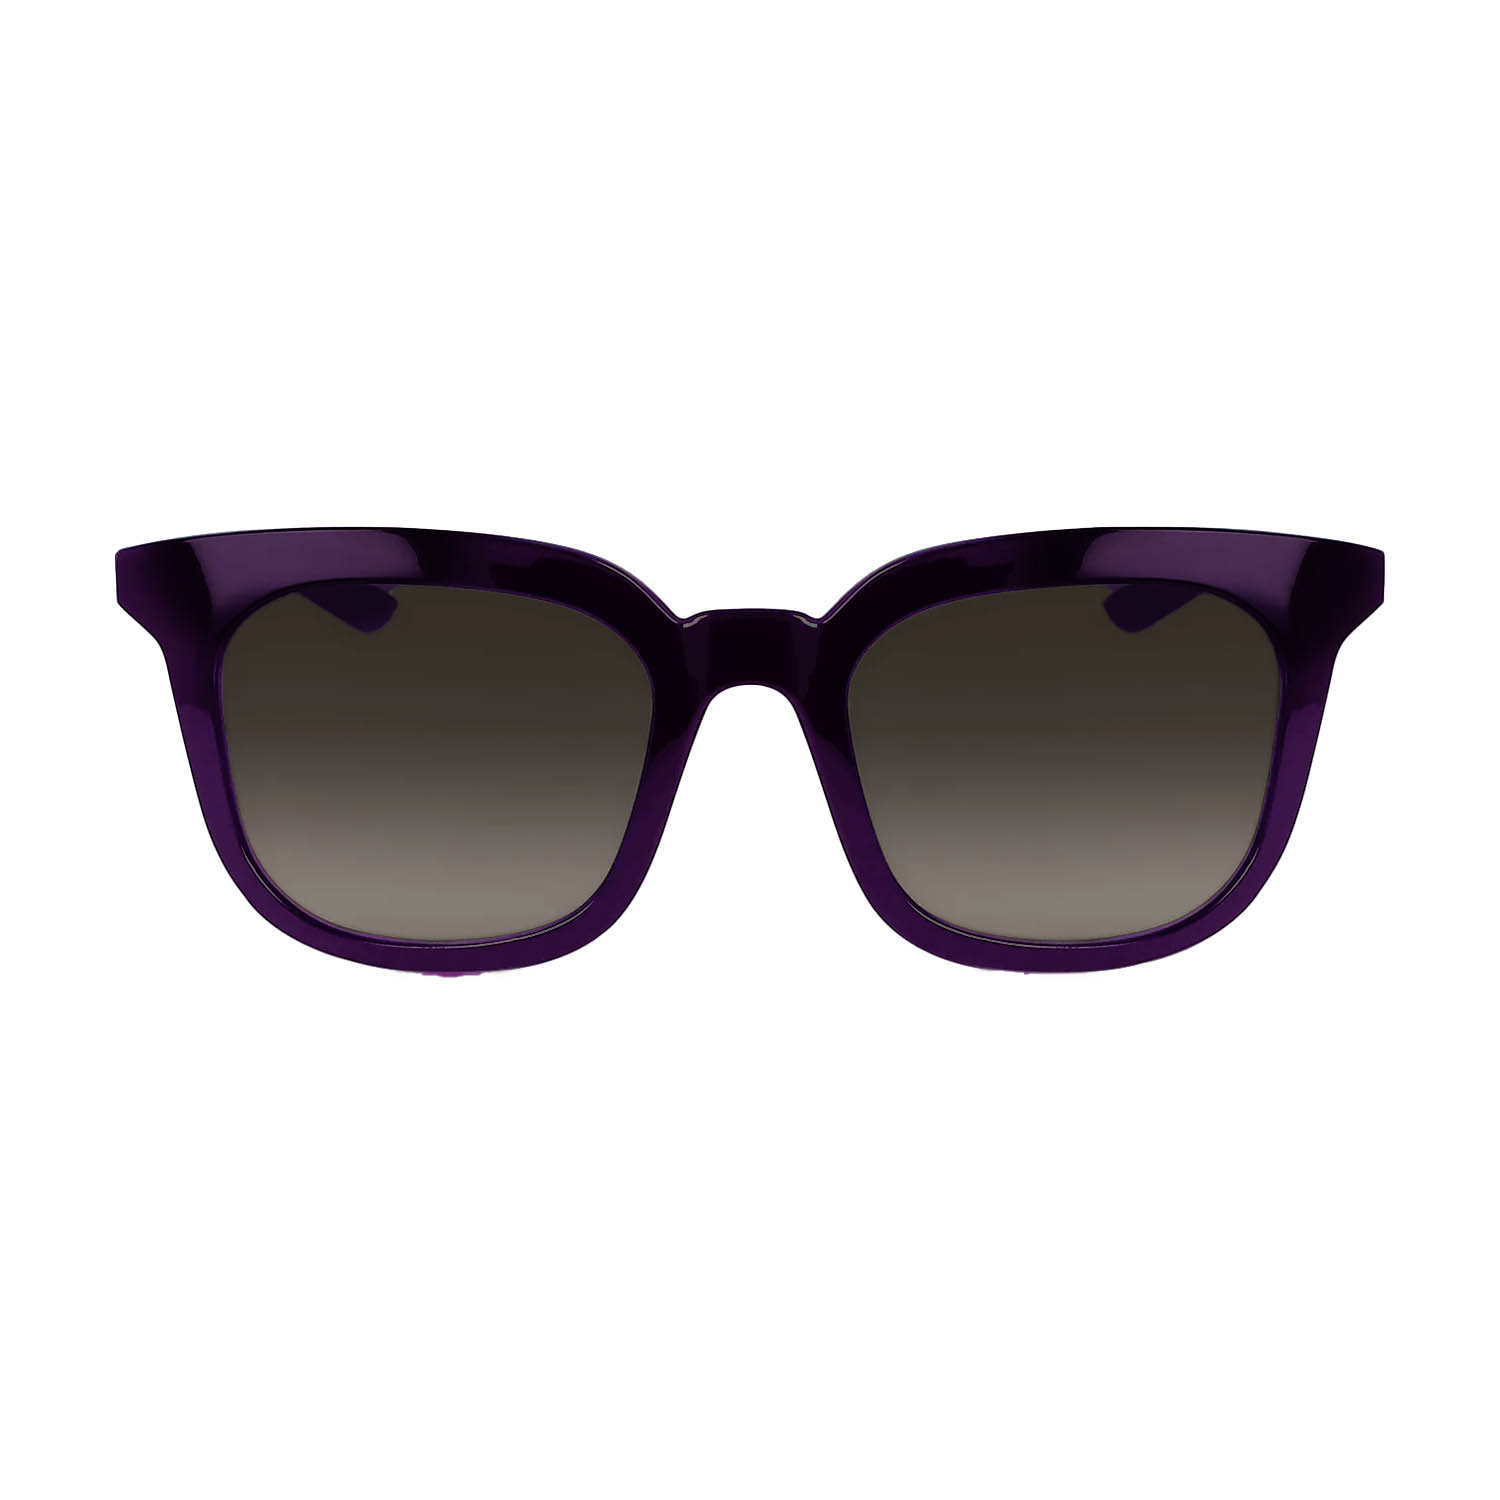 Nike Myriad Gafas de sol - Violet/Marron Gradient